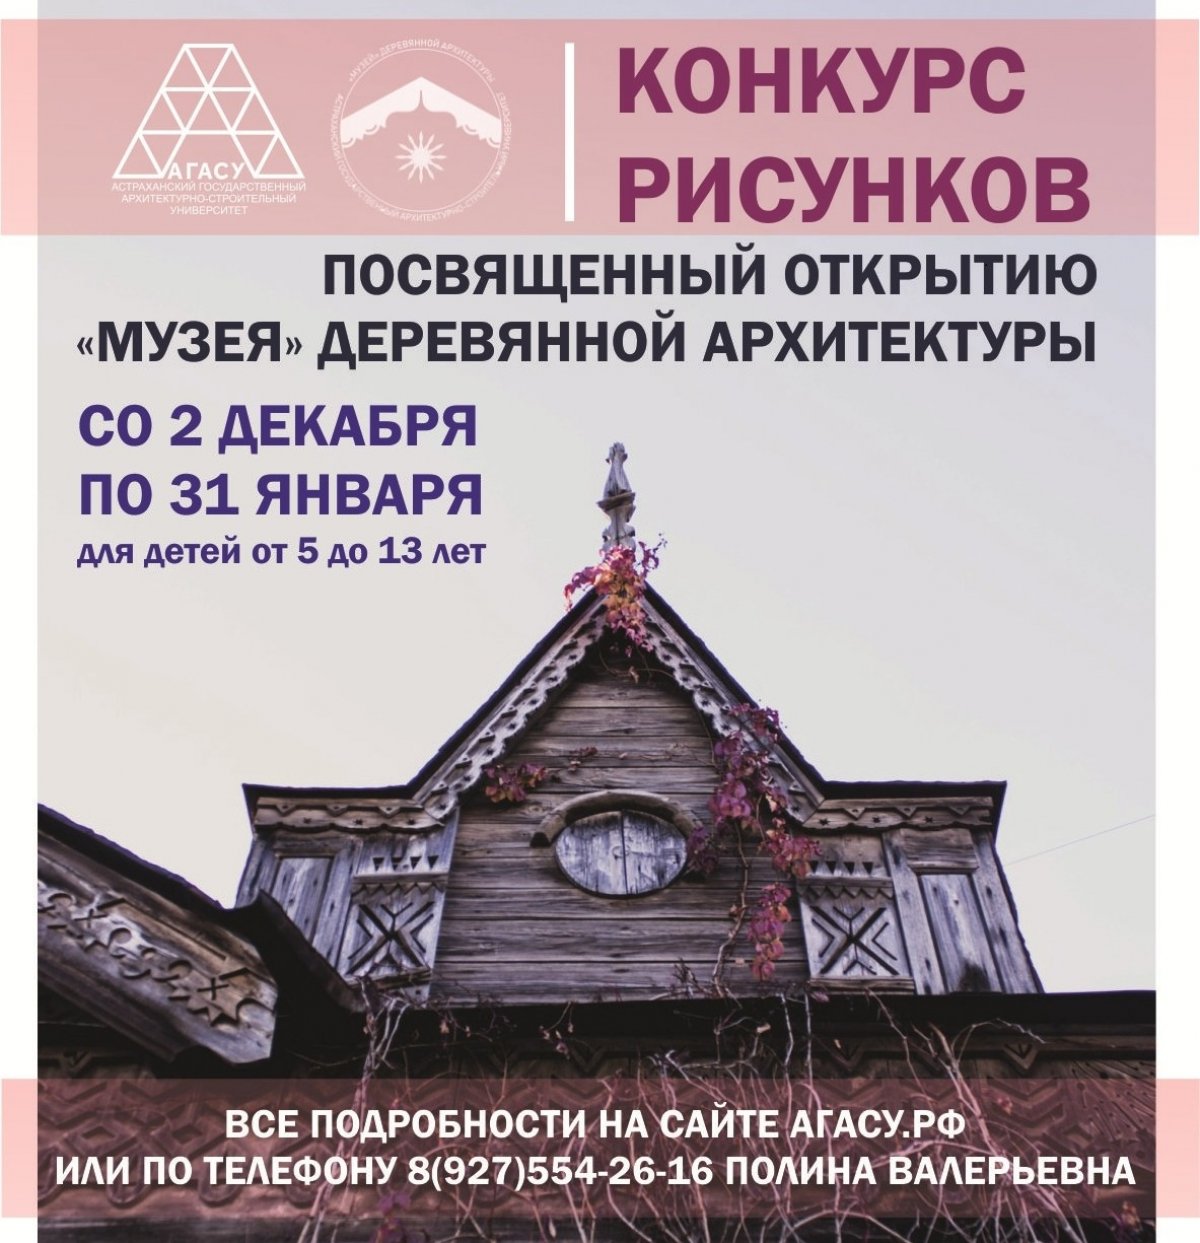 В рамках подготовки открытия "Музея" деревянной архитектуры ARTстудия "Белый квадрат" АГАСУ объявляет конкурс рисунков для дошкольных и школьных образовательных организаций Астрахани и области.